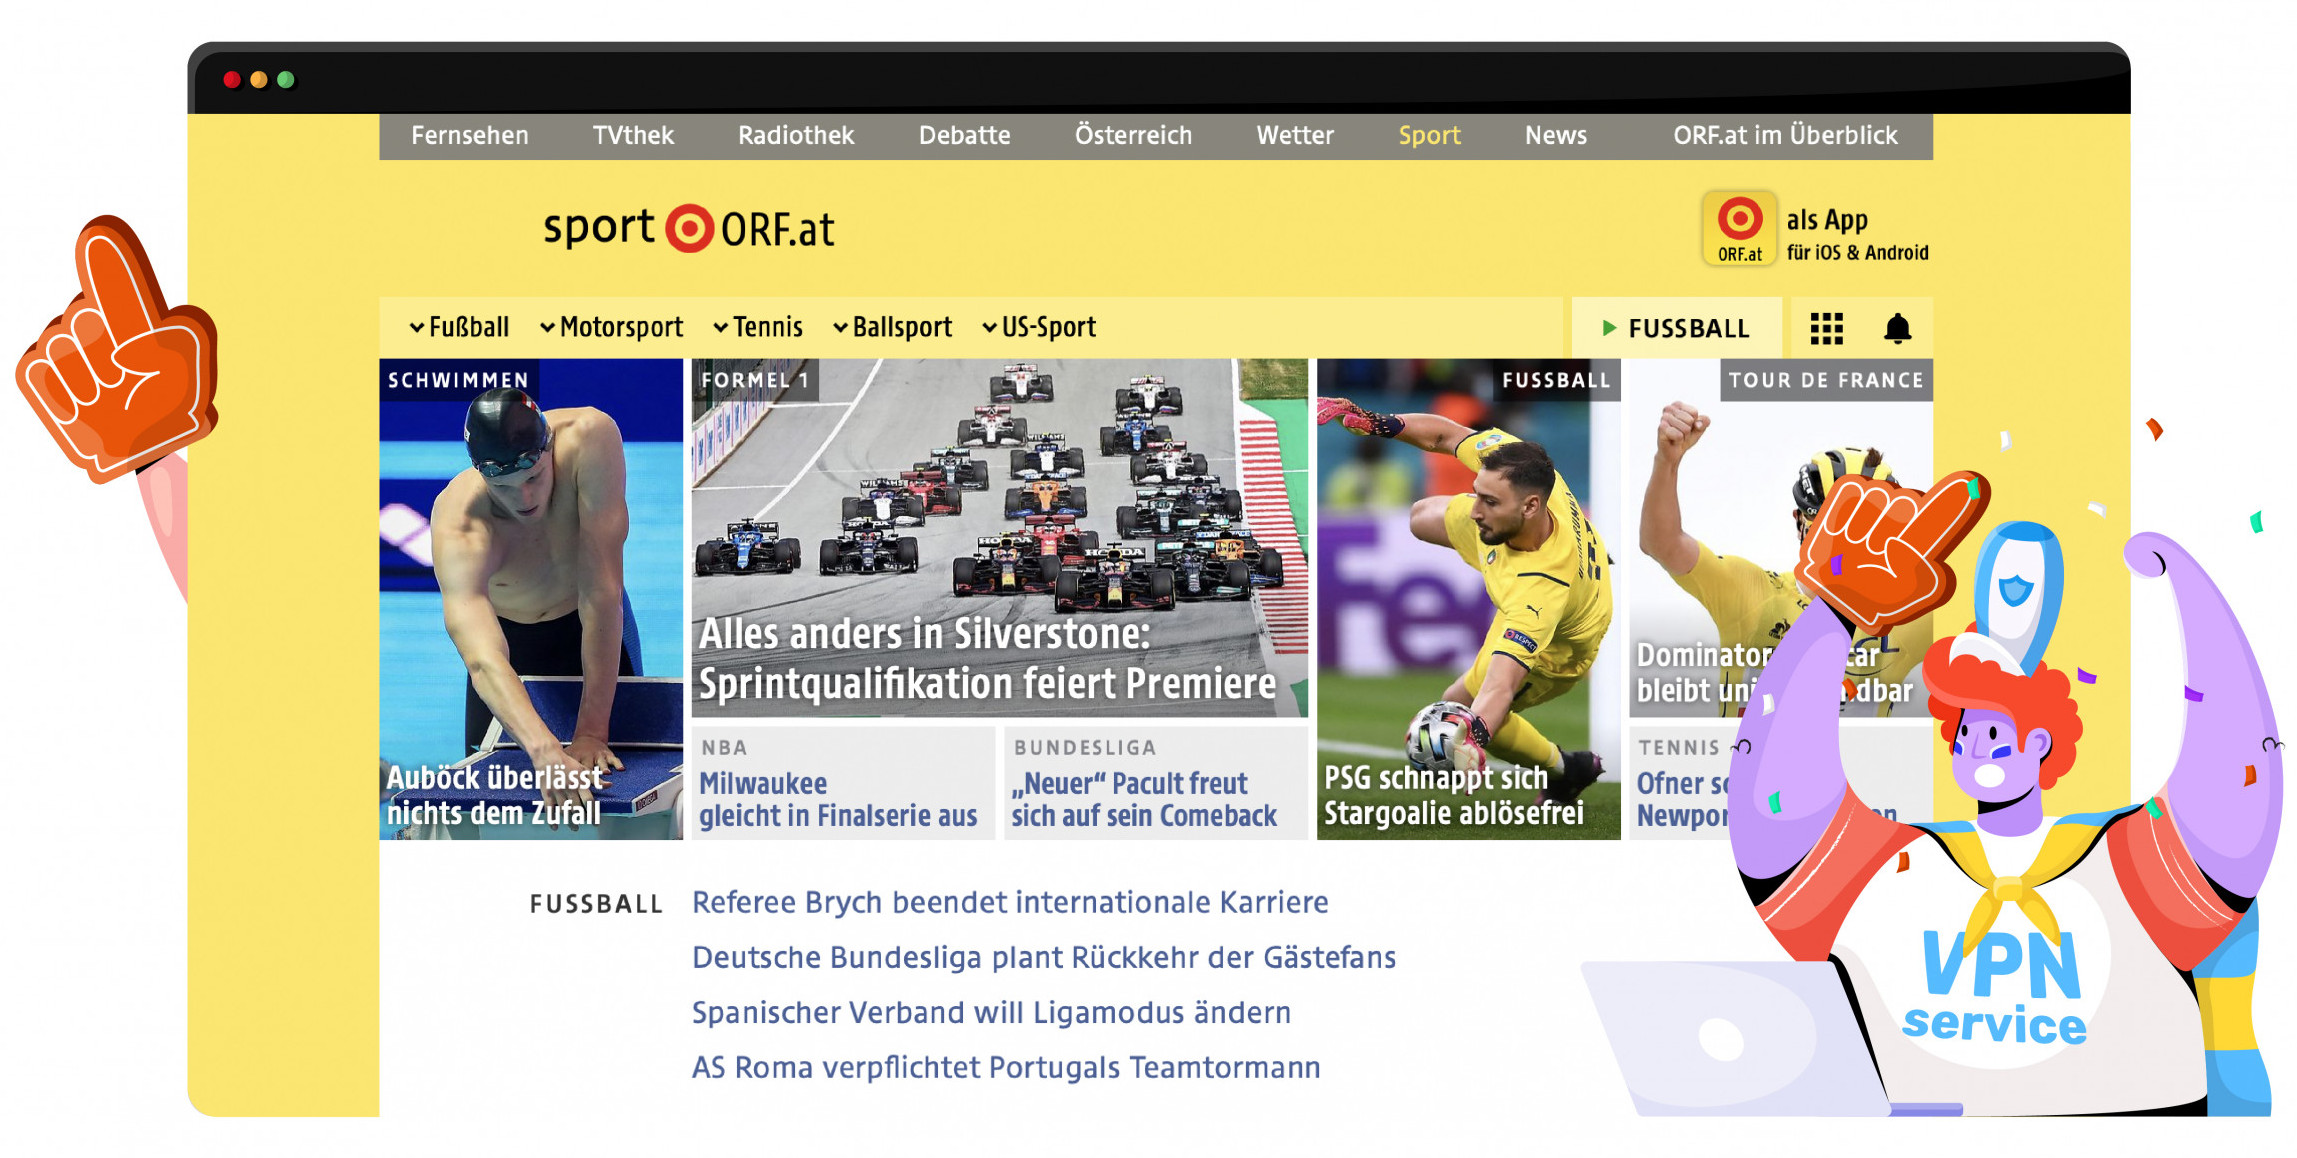 Transmite todo tipo de deportes en ORF1 con una VPN 